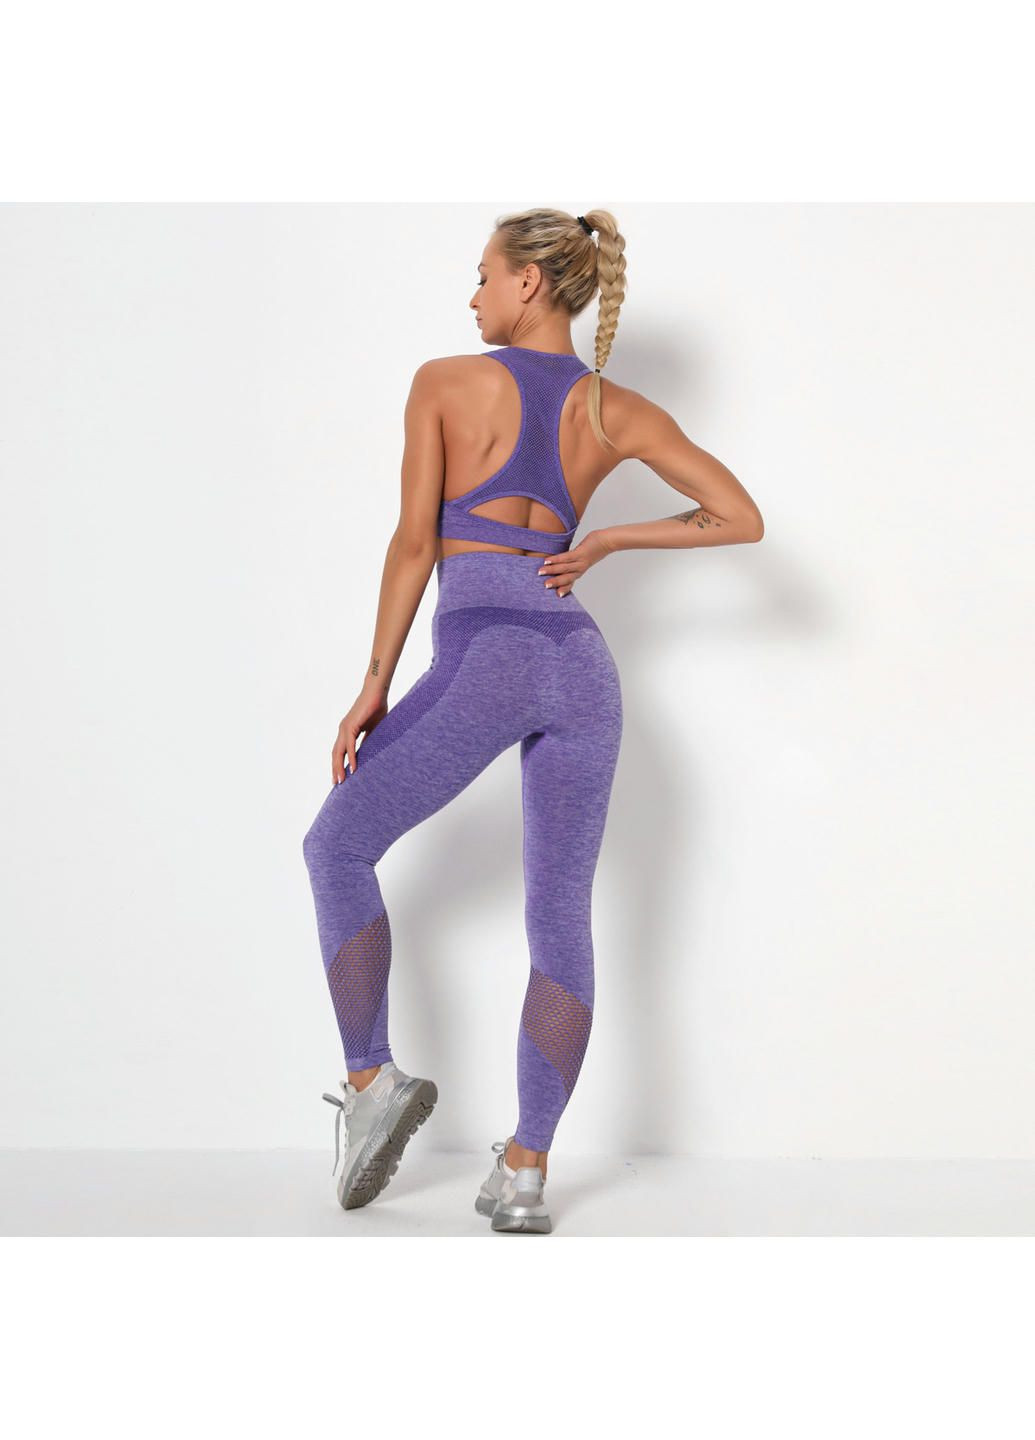 Комбинированные демисезонные леггинсы женские спортивные 9668 s фиолетовые Fashion